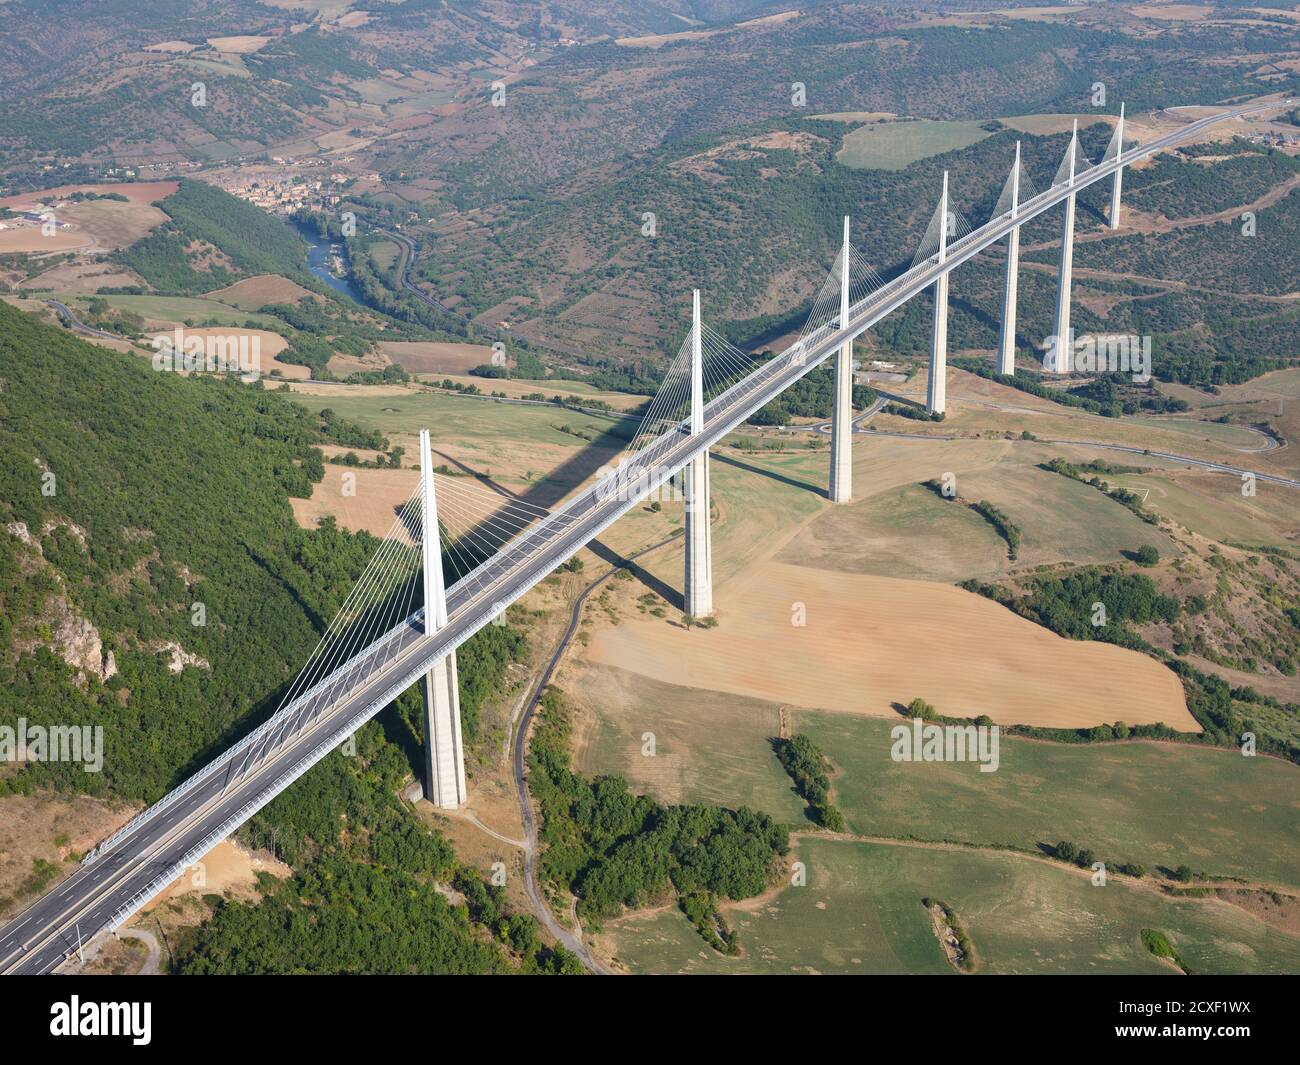 VISTA AÉREA. El viaducto de Millau, a 336 metros sobre el río Tarn, es el puente más alto del mundo desde 2020. Millau, Aveyron, Occitanie, Francia. Foto de stock